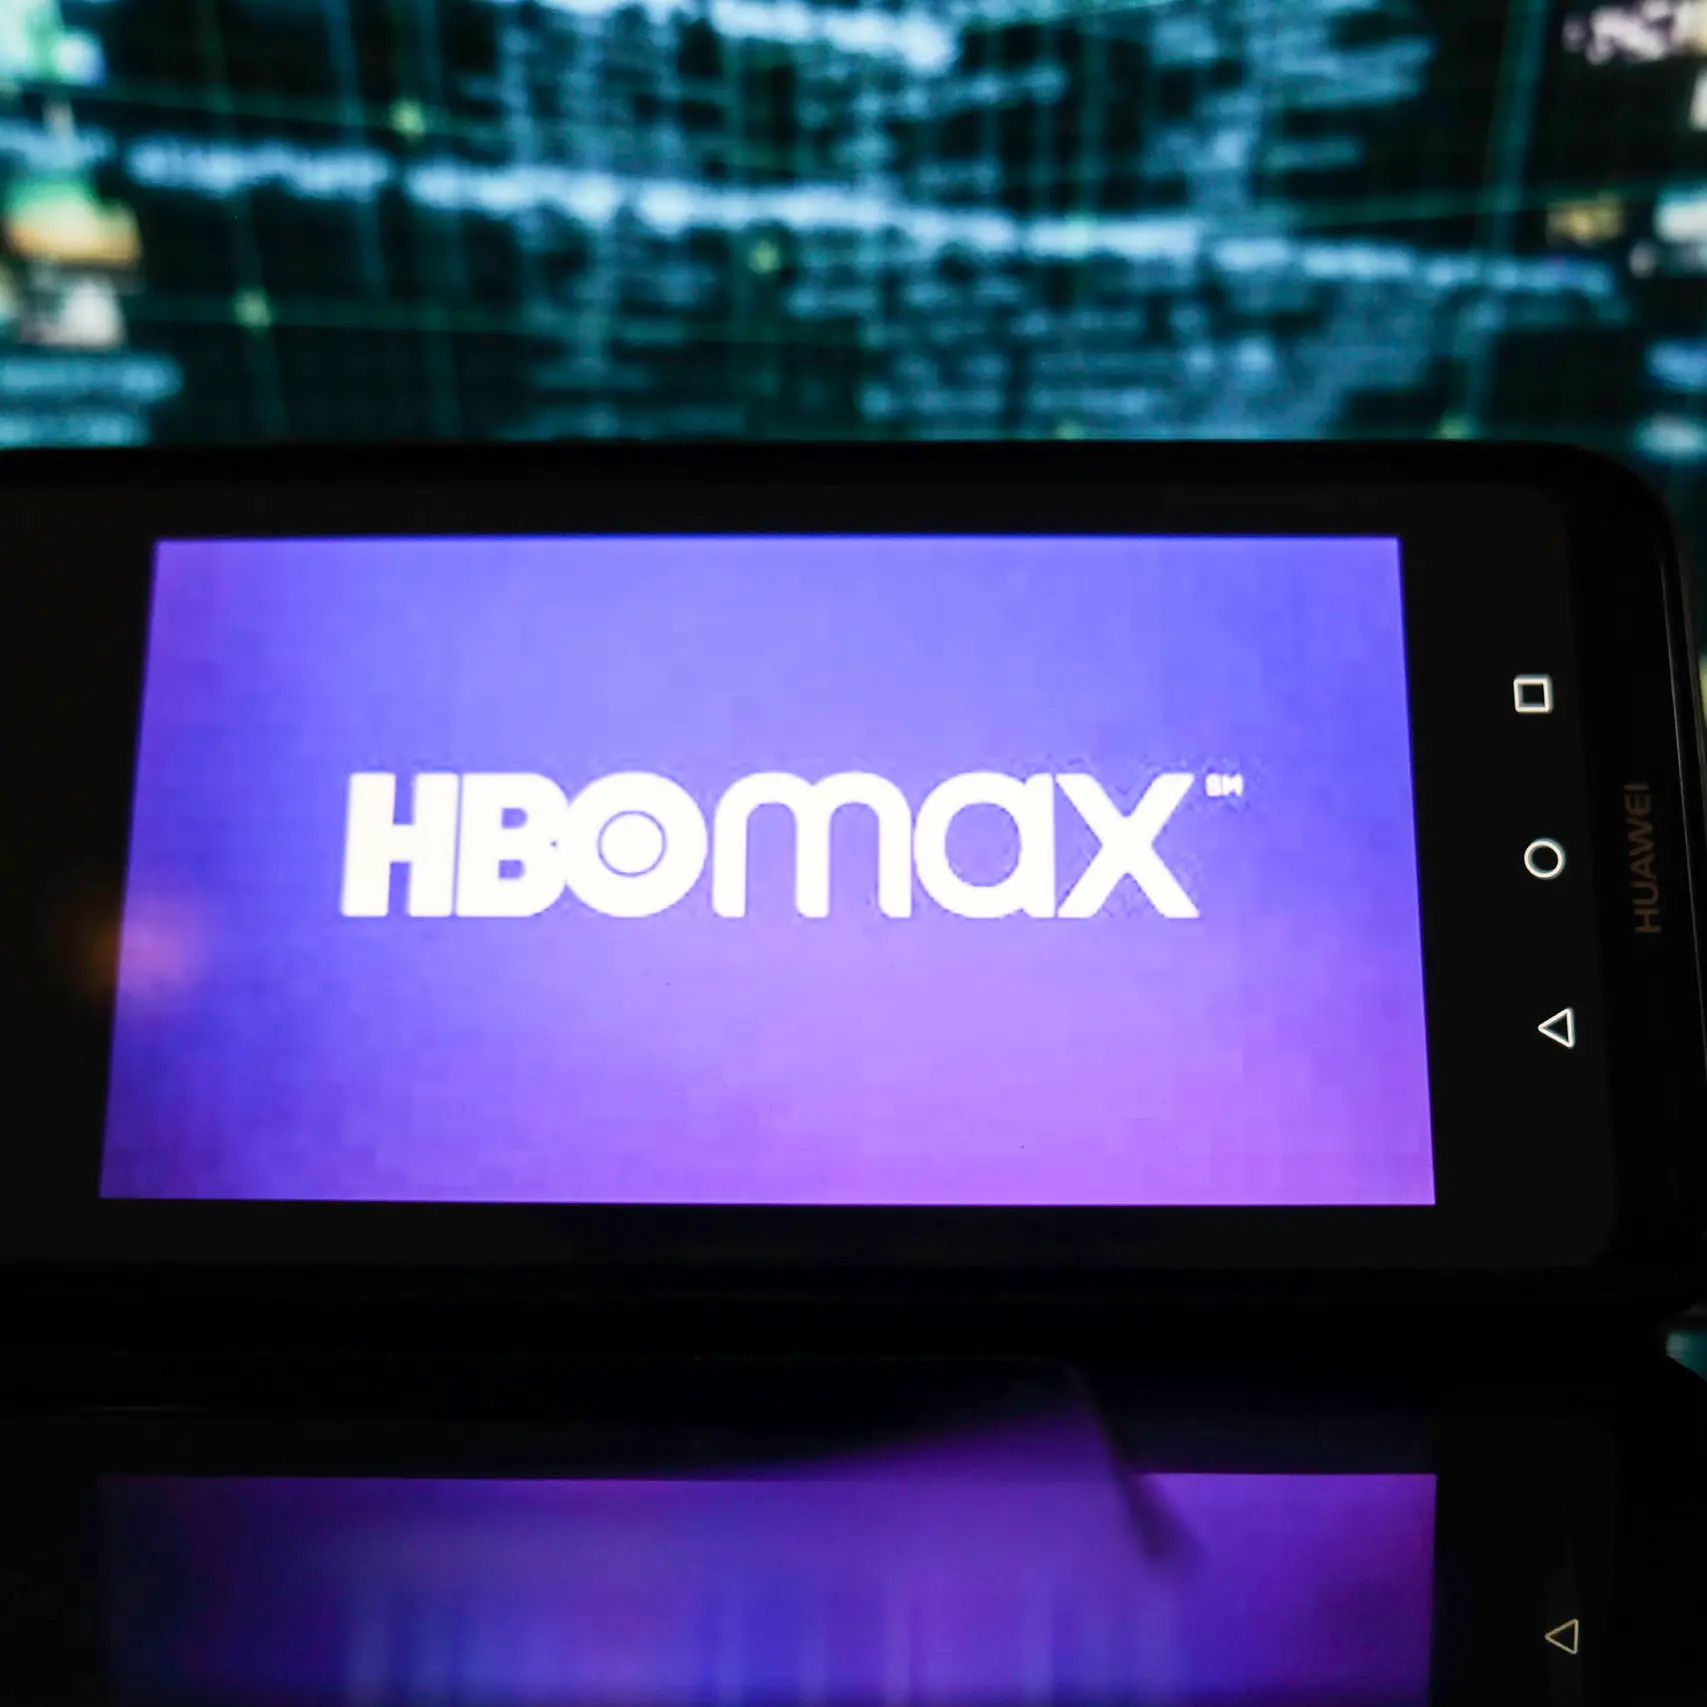 HBO Max aumenta preços em Portugal. Mas podes subscrever por metade do preço  - 4gnews